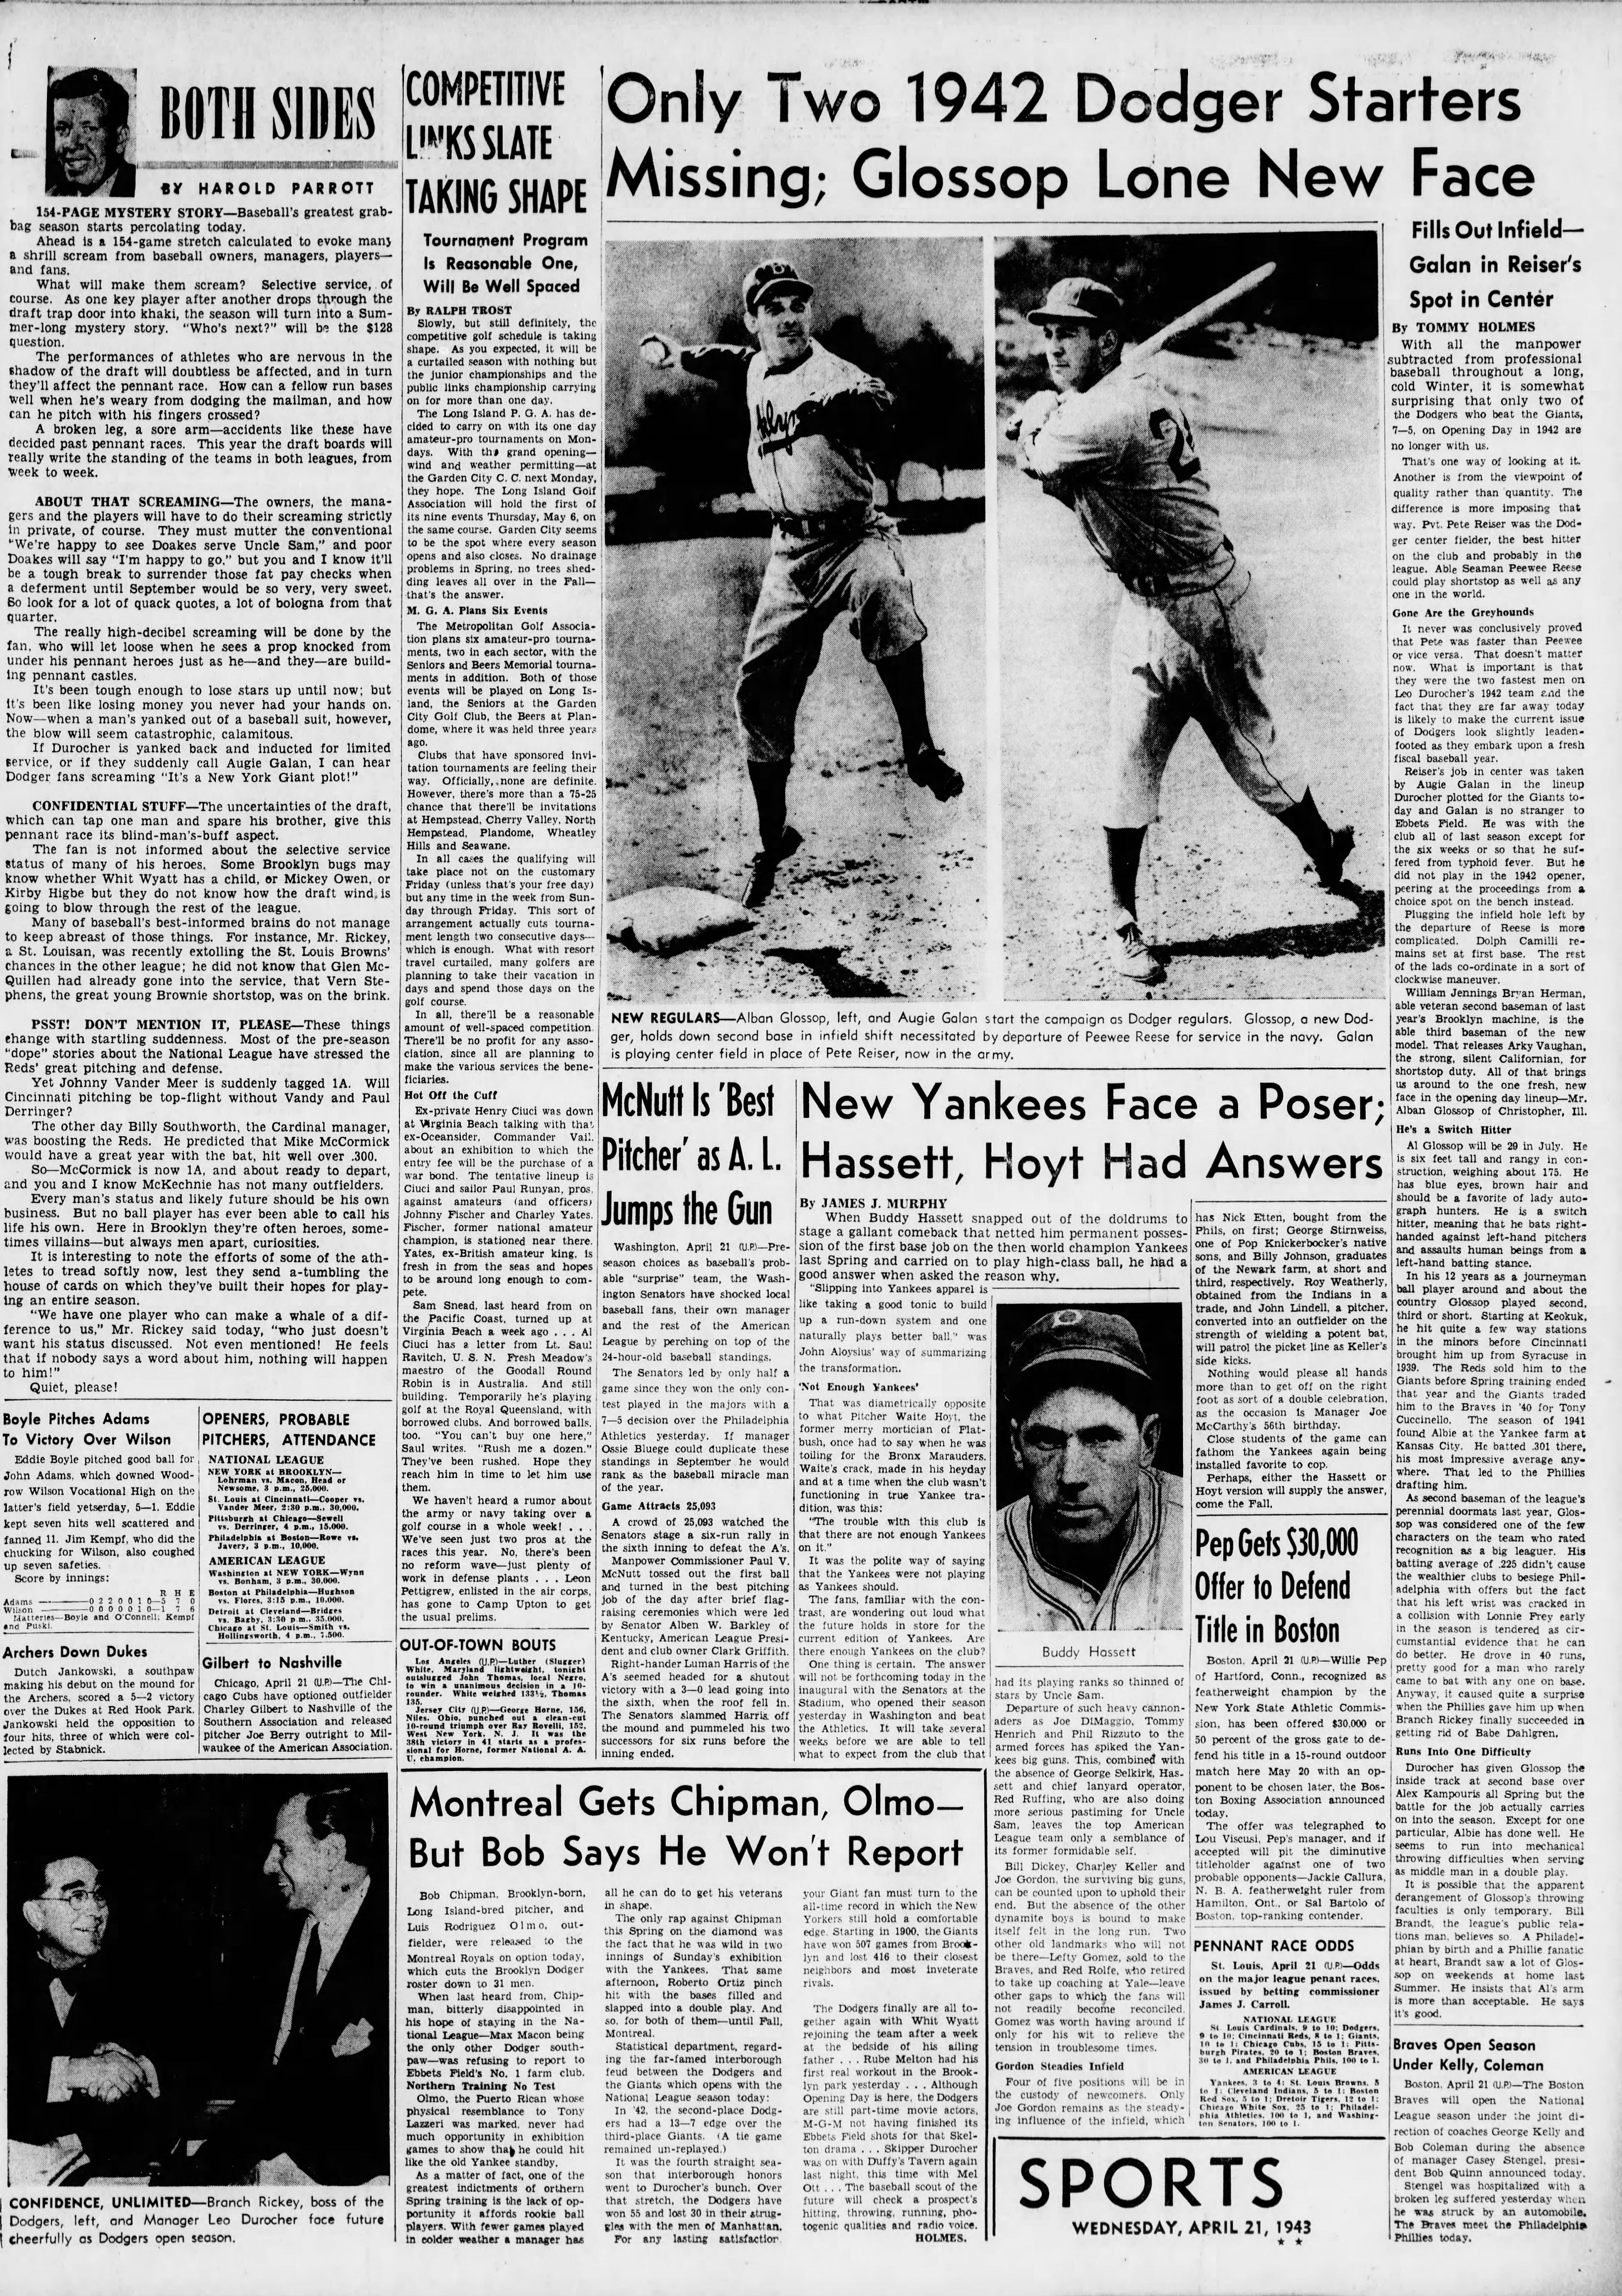 The_Brooklyn_Daily_Eagle_Wed__Apr_21__1943_(4).jpg